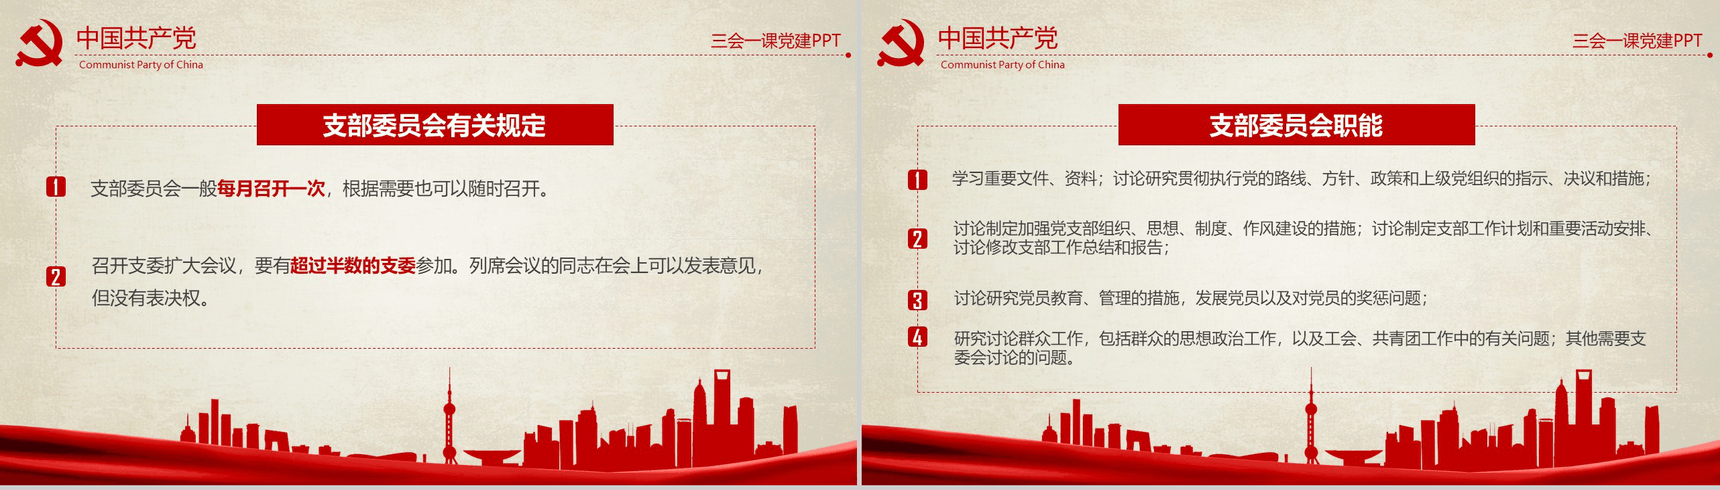 农村基层党建知识红色反腐思想指南和行动纲领学习教育PPT模板-8